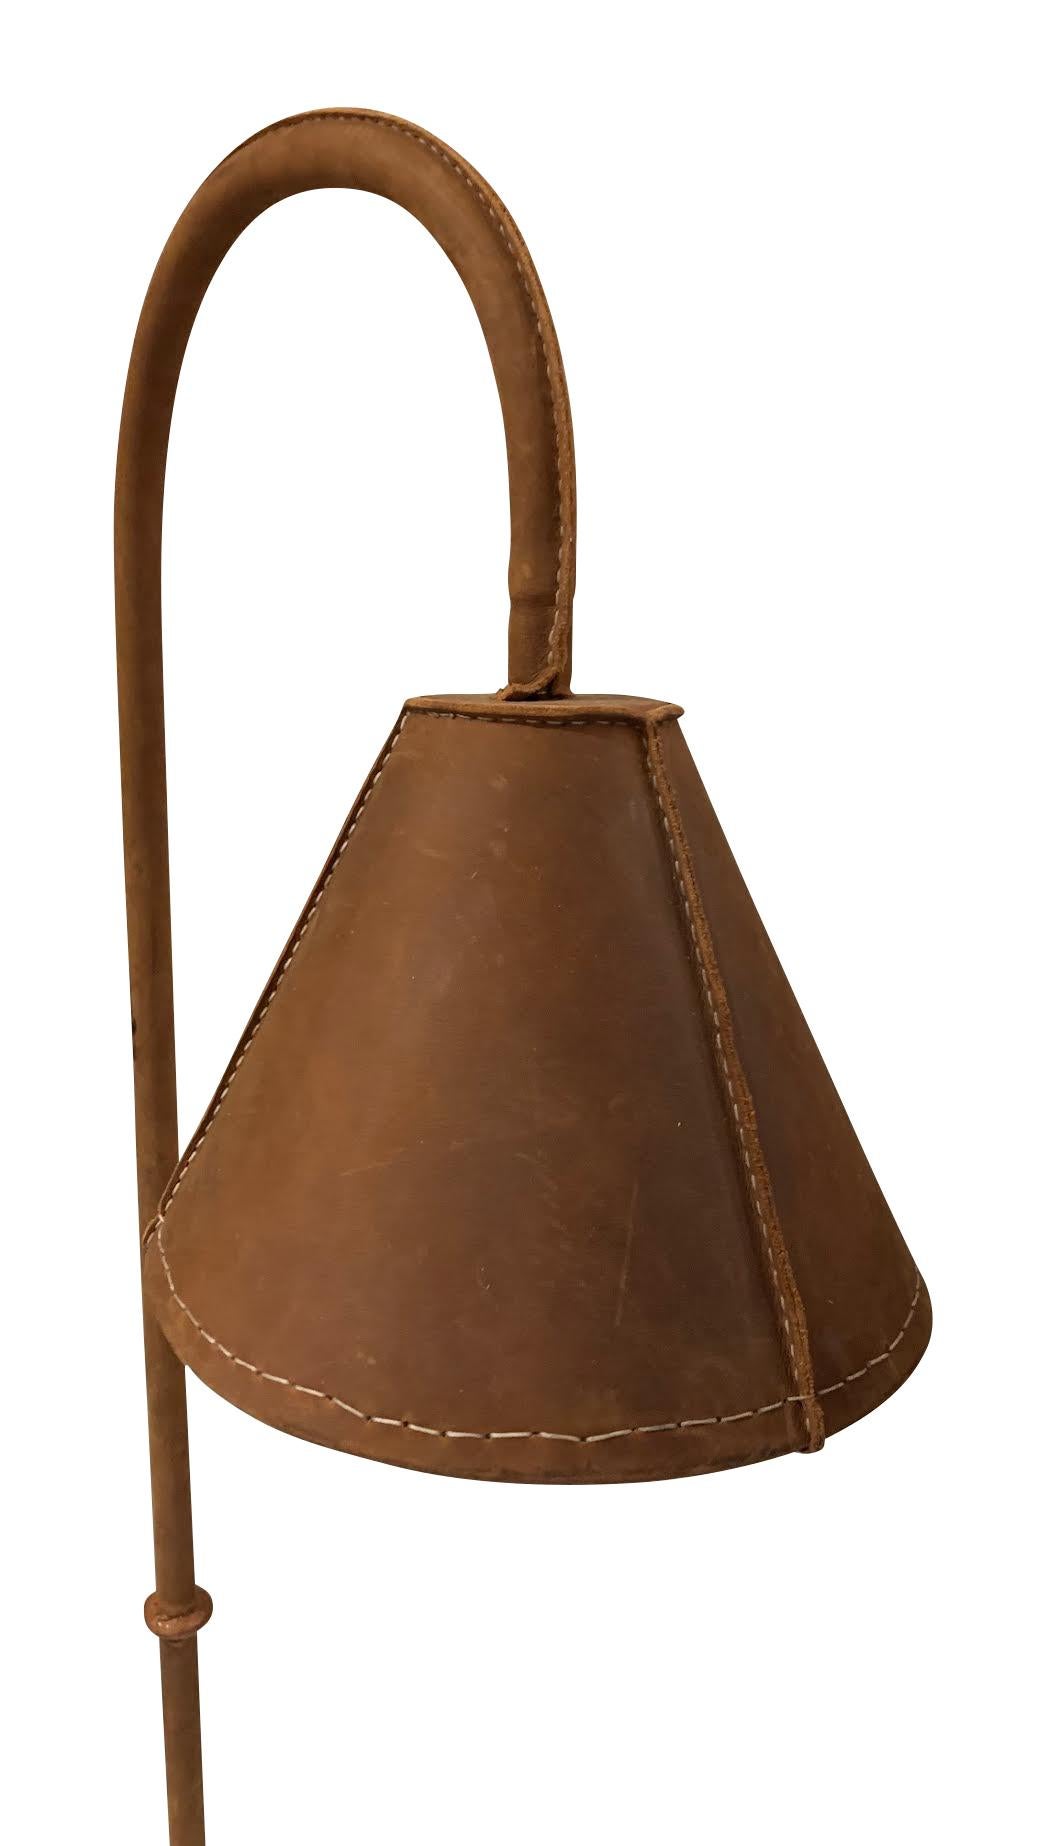 Lampadaire espagnol du milieu du siècle, tout en cuir, conçu par Valenti.
L'abat-jour, le poteau et la base du sol sont tous recouverts de cuir de couleur lie-de-vin.
L'abat-jour s'adapte à la lumière directe.
Également disponible en noir (L1119) et